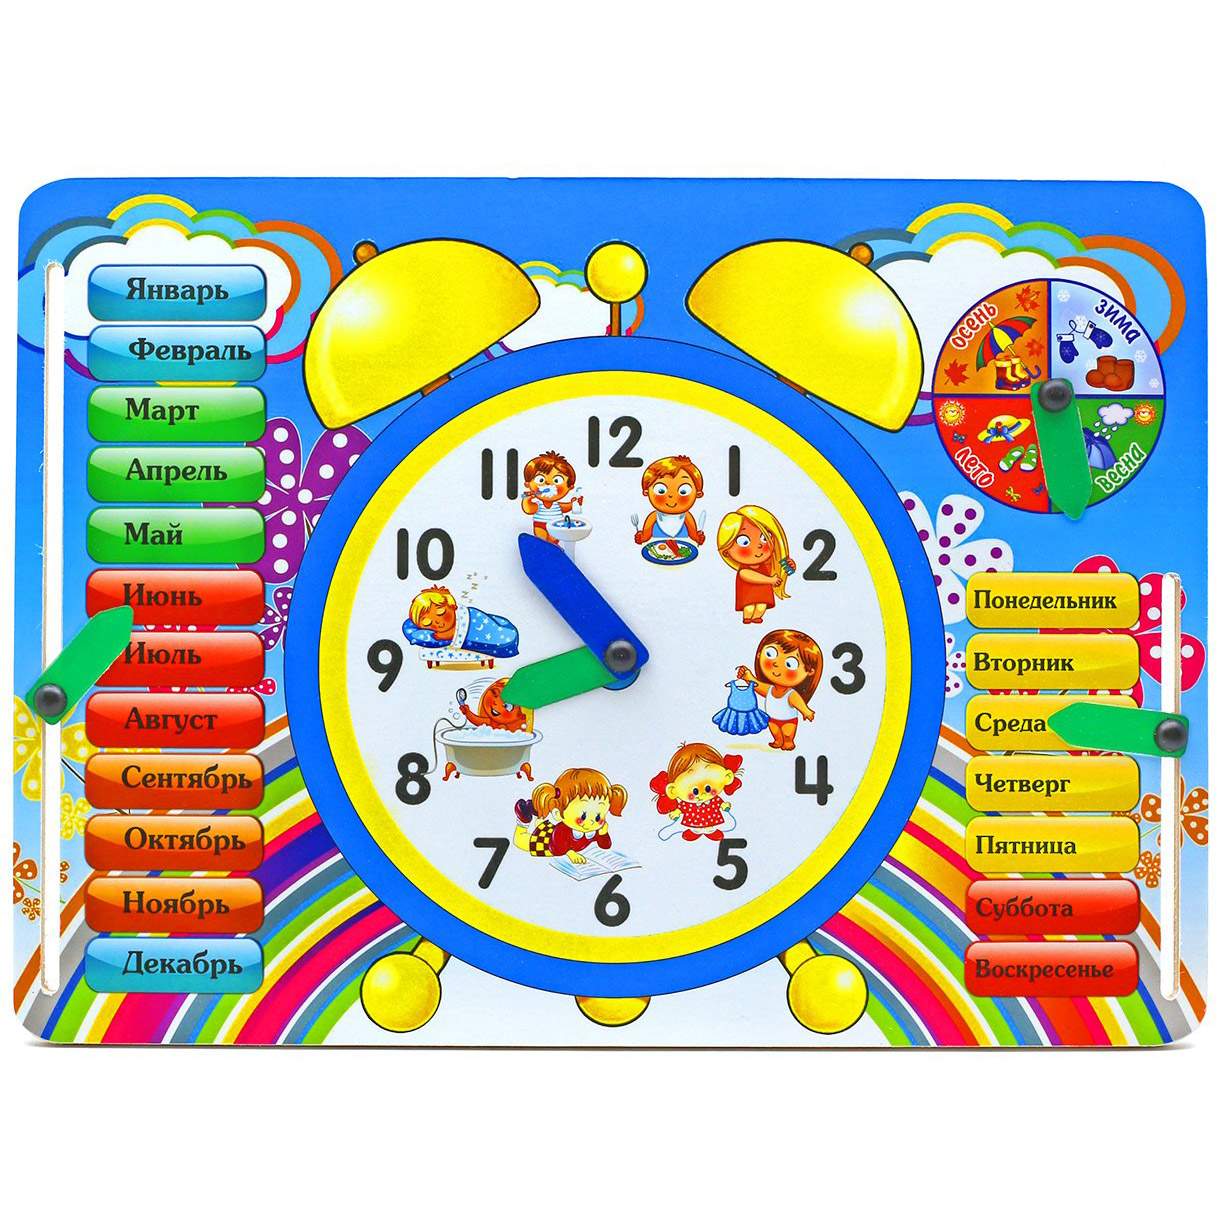 Игра с часами для детей. Обучающая доска «времена года» ig0083. Часы игрушка для детей. Обучающие часы. Часы развивающие для детей.